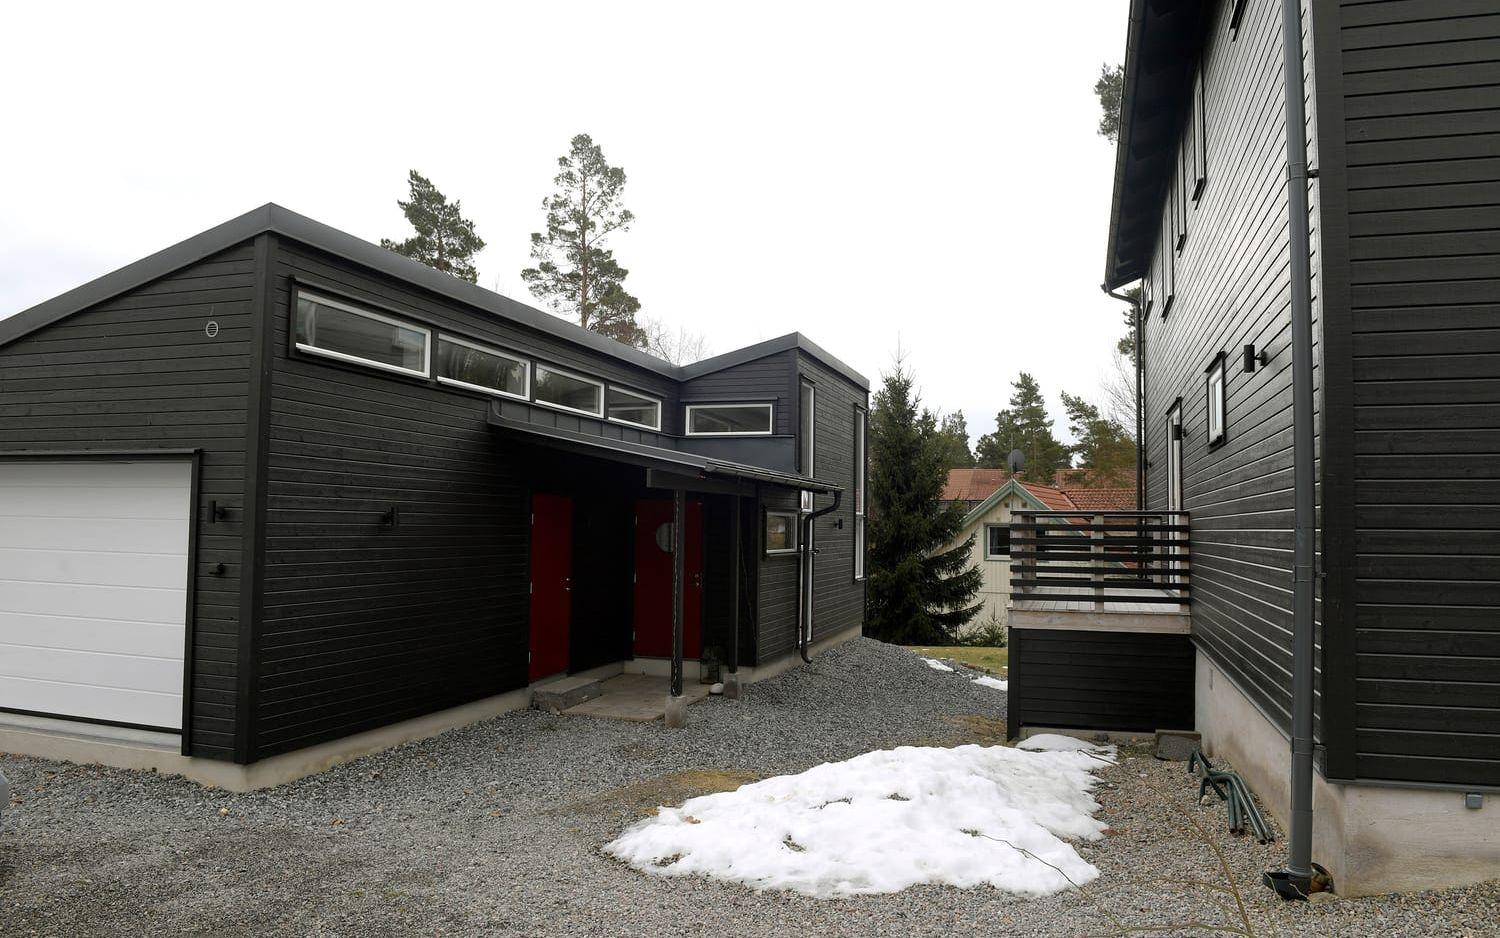 Huset är byggt av samma arkitekt som huvudhuset och målat i samma svarta färg för att knyta ihop det hela. Foto: Janerik Henriksson/TT